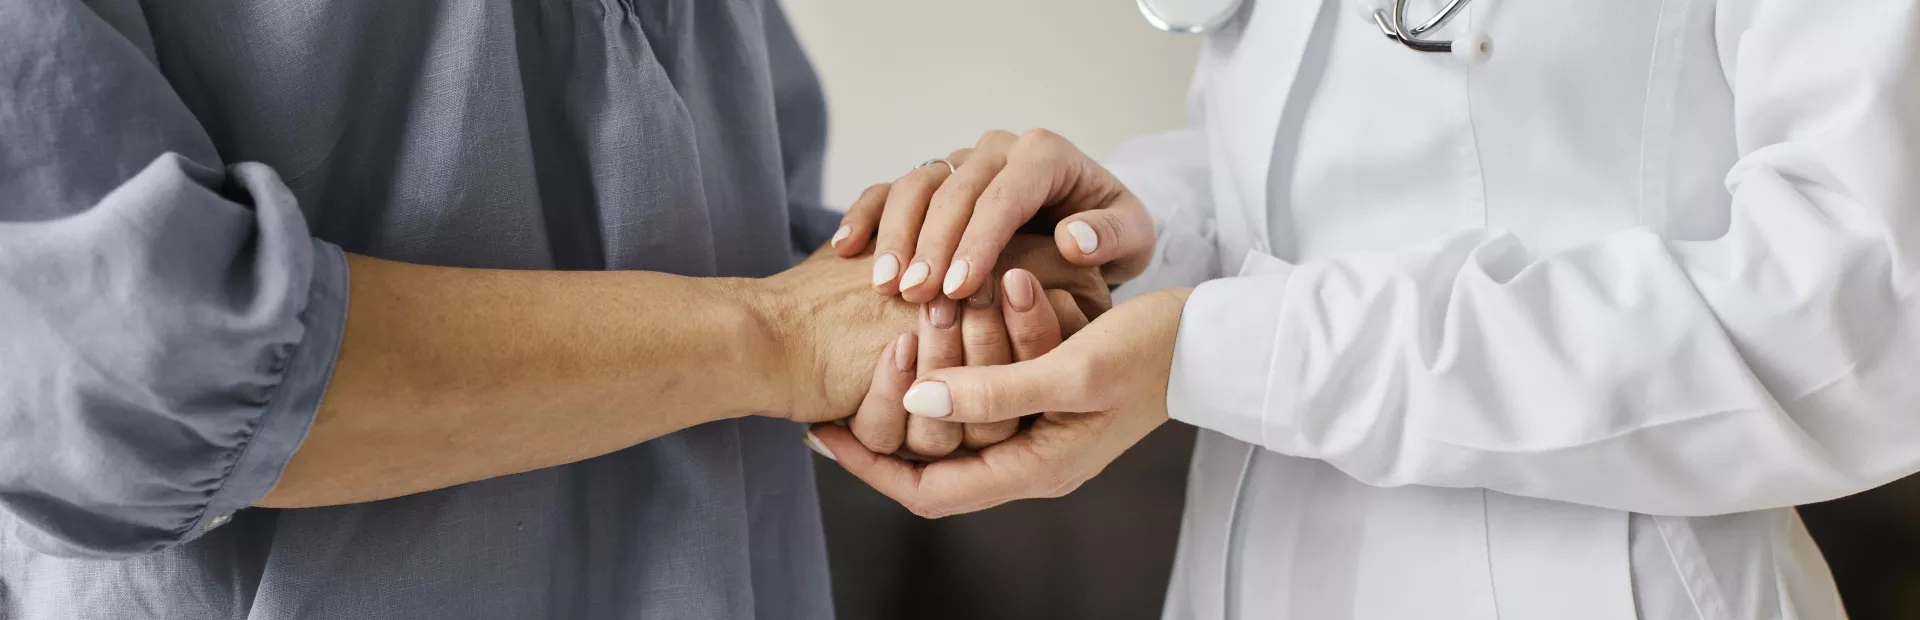 doctora sujetando las manos a su paciente